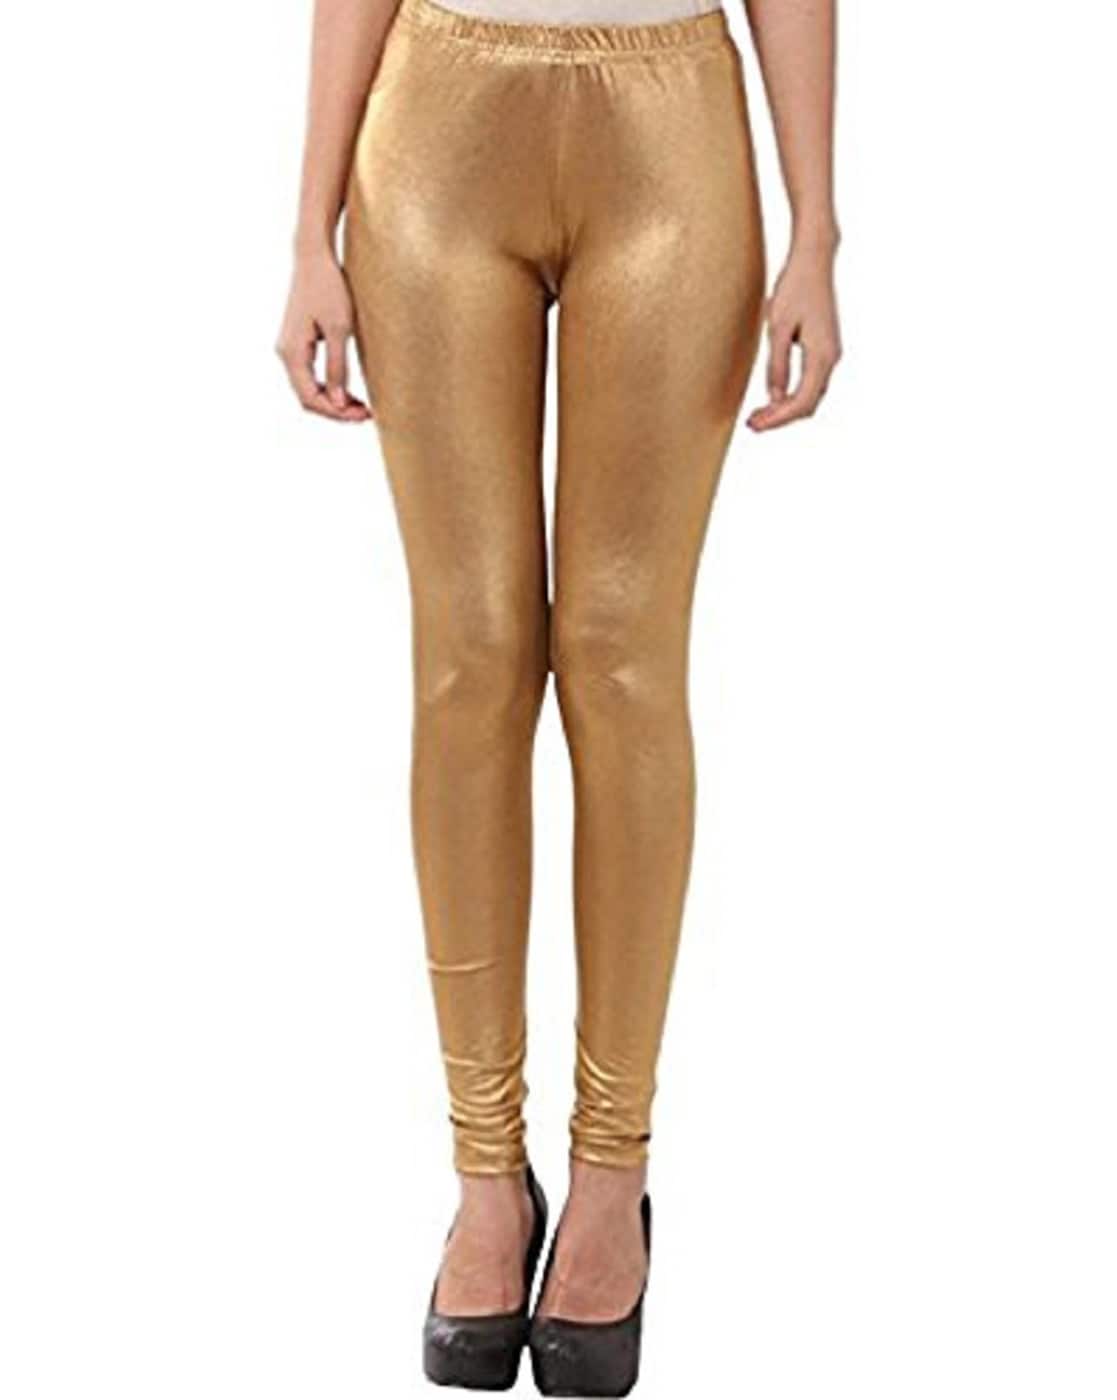 Buy Gold Leggings for Women by DREAM & DZIRE Online